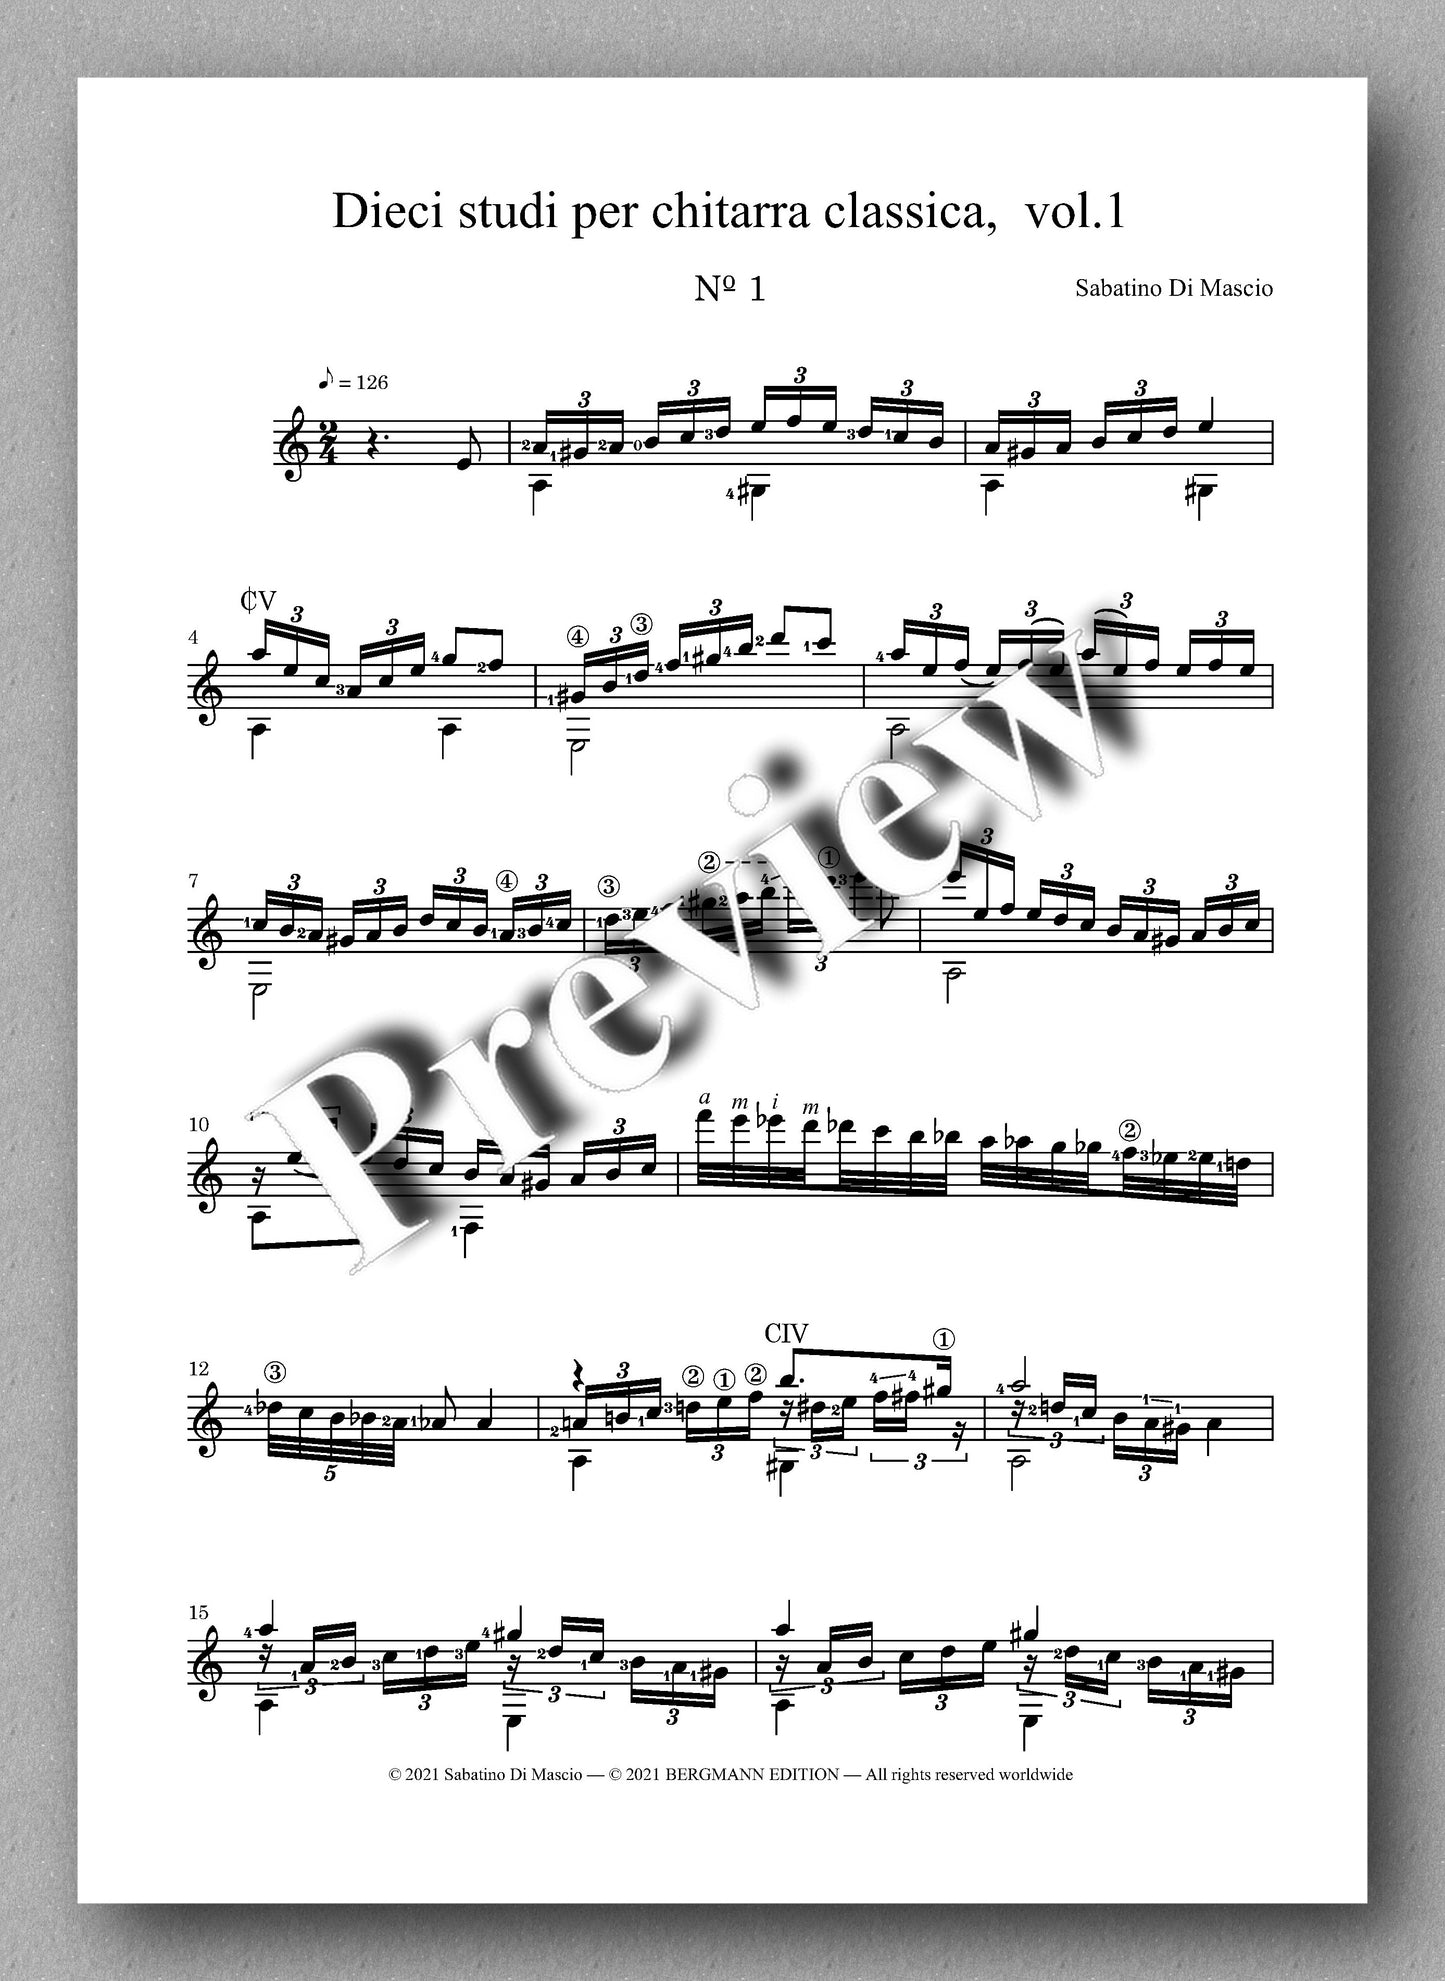 Di Mascio, Dieci studi per chitarra, Vol. 1 - music score 1